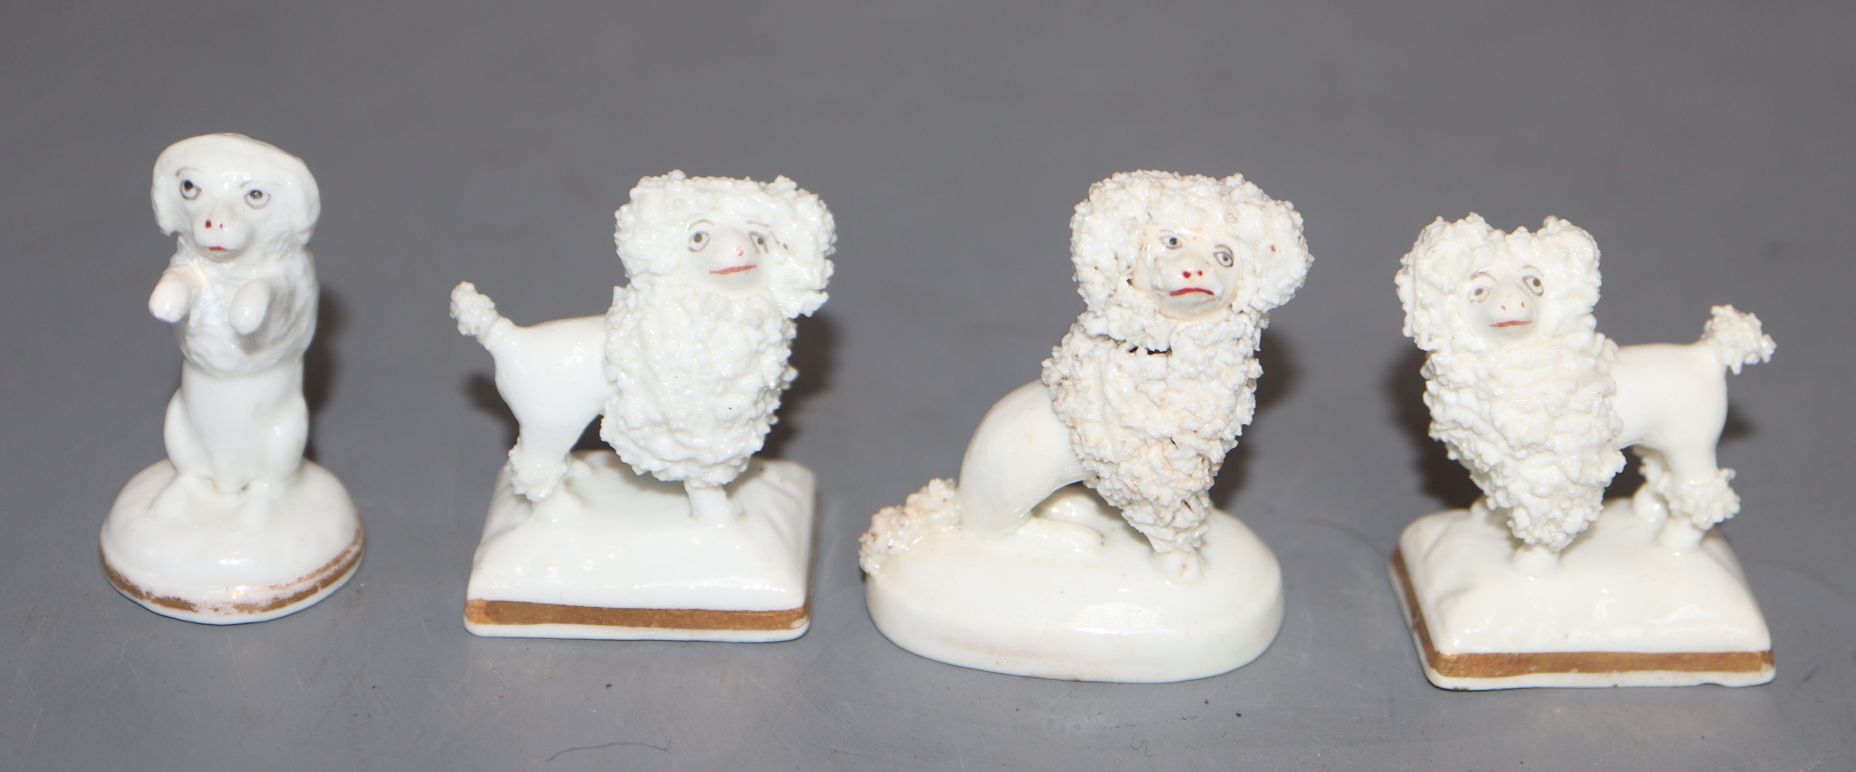 Four Staffordshire porcelain toy figures of poodles, c.1830-50, H. 3.7 - 4cm